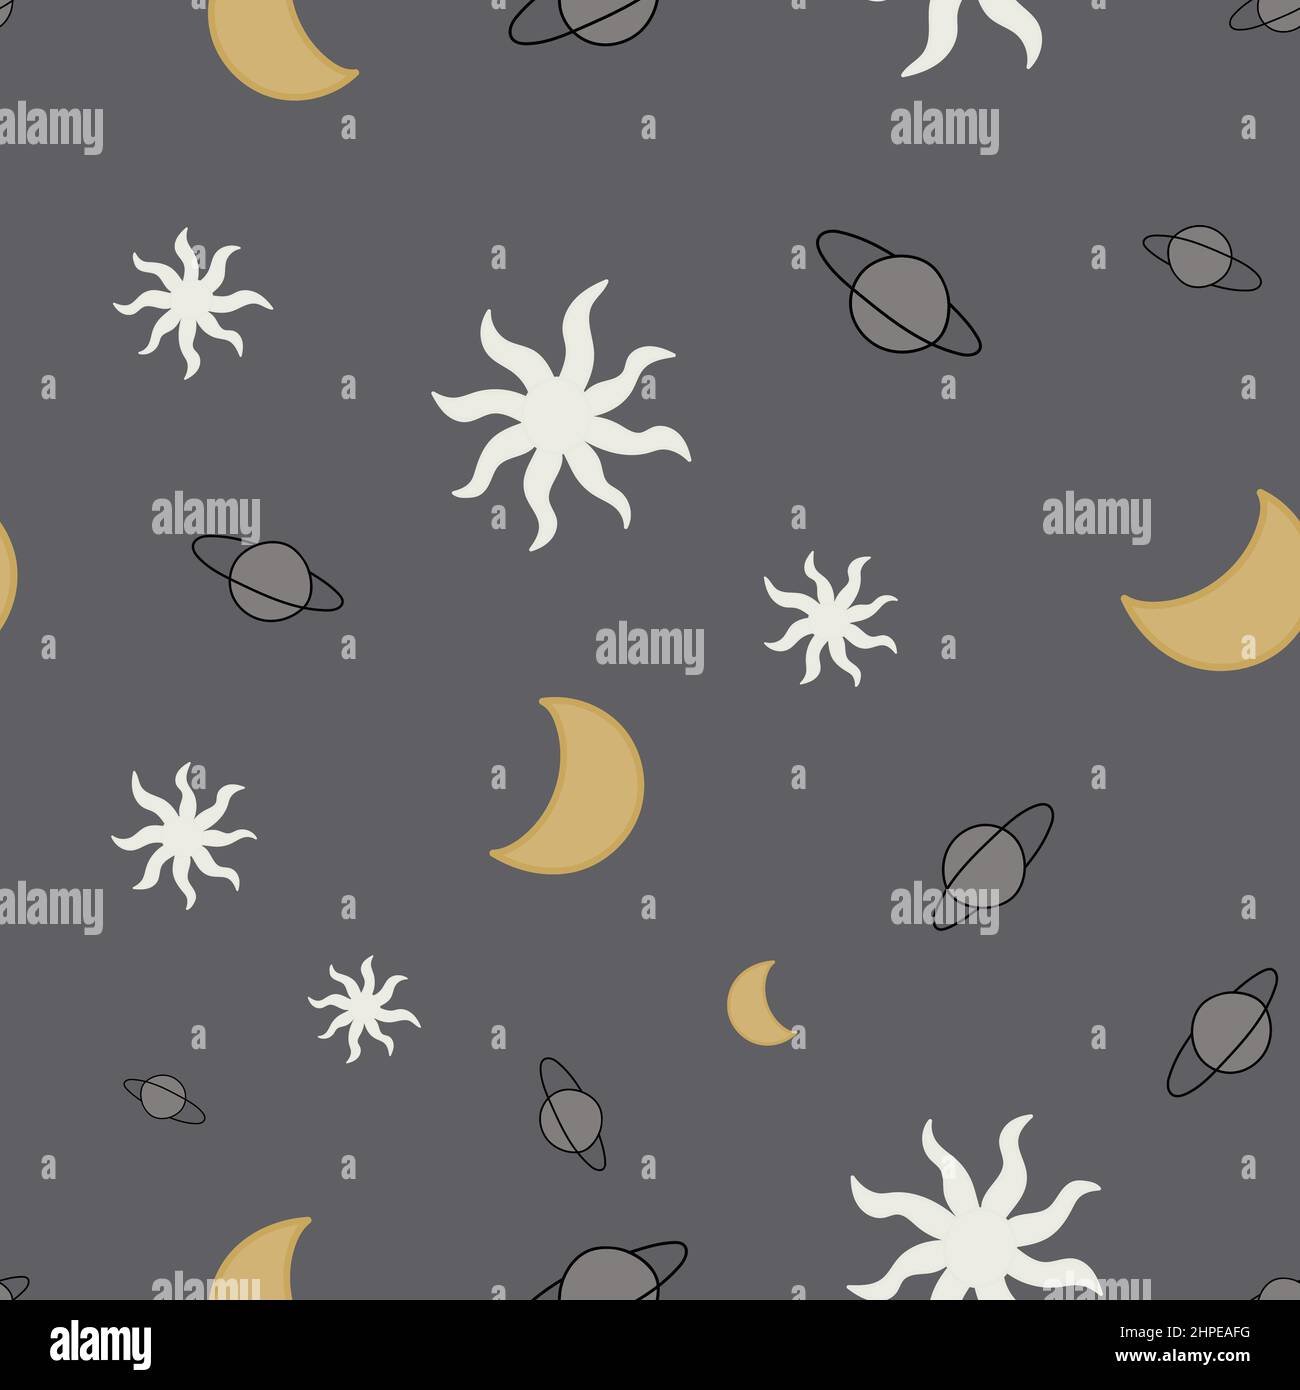 Nahtlose Muster der Himmelskörper. Handgezeichnete astronomische Objekte auf grauem Hintergrund. Stock Vektor